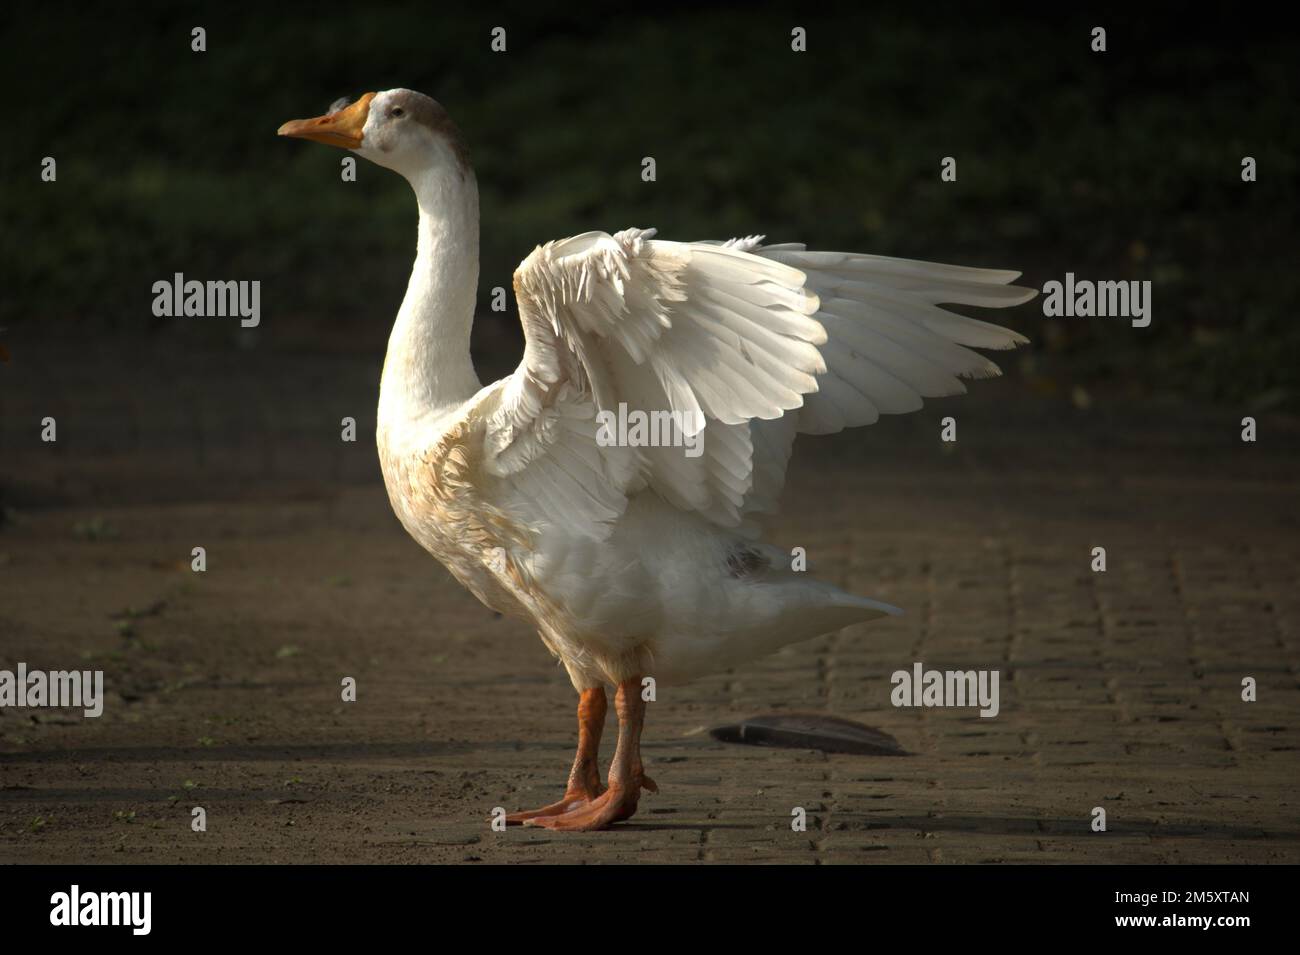 swan se prépare à plonger. Banque D'Images